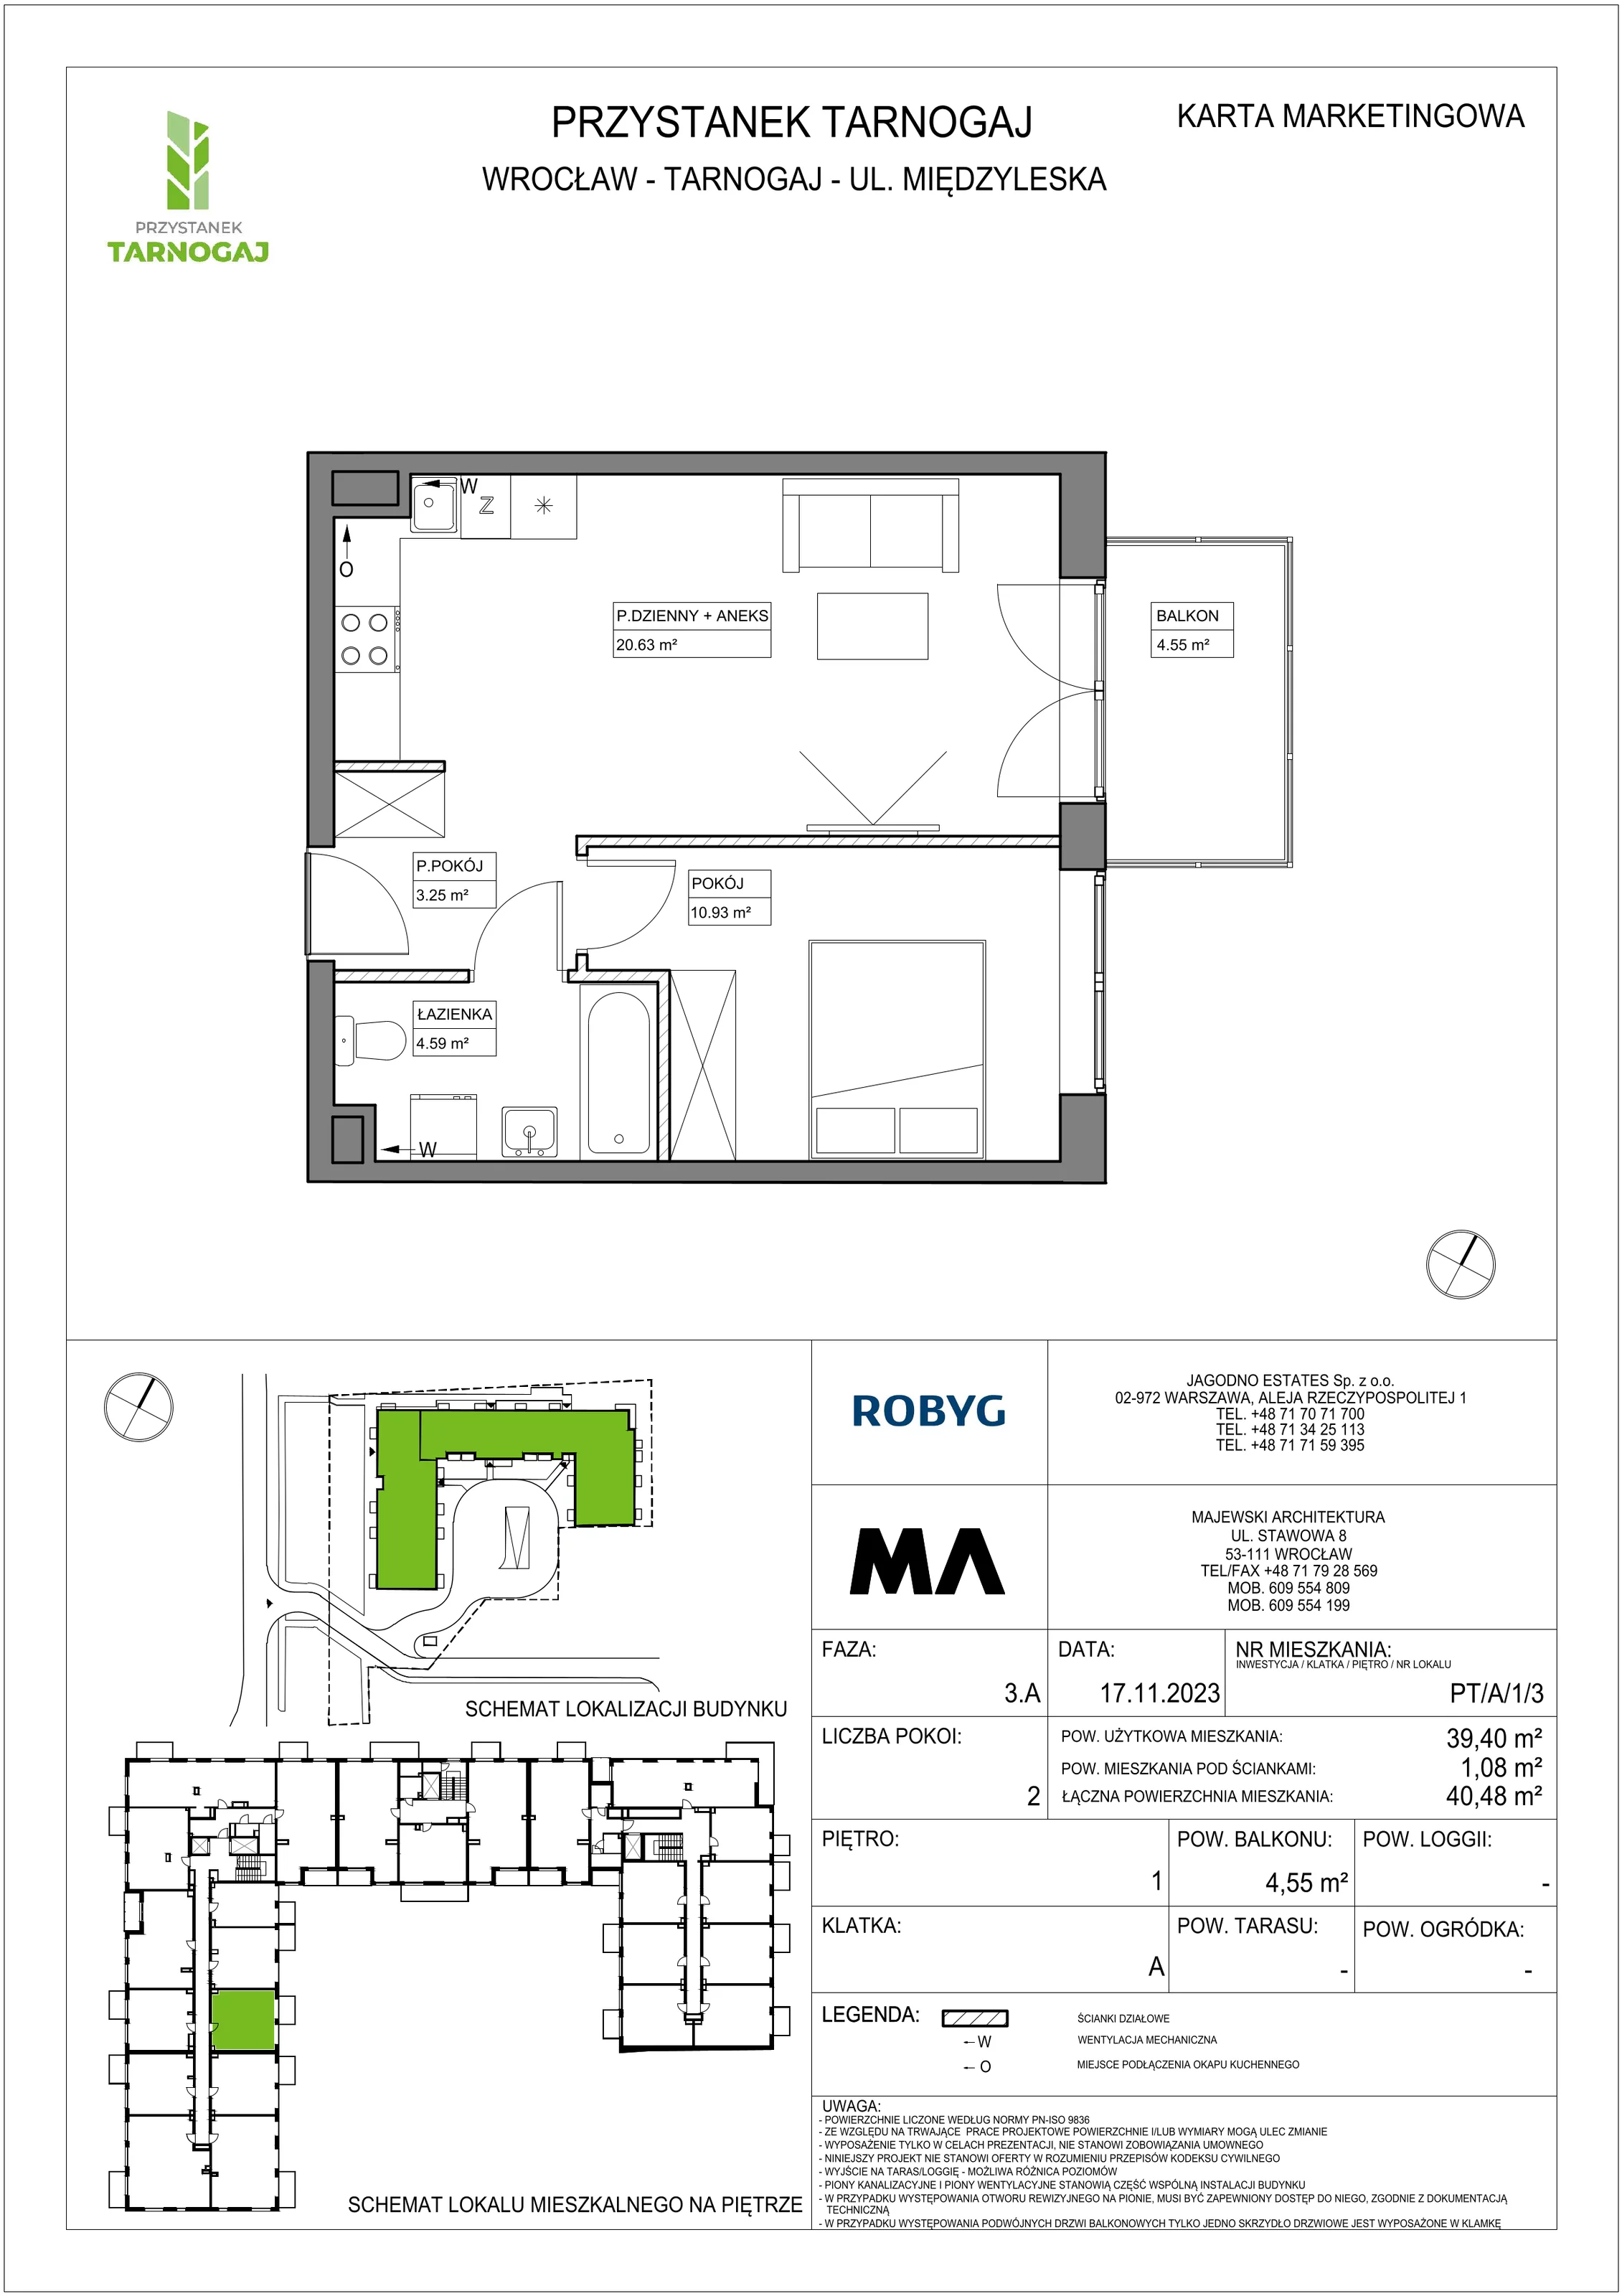 Mieszkanie 39,40 m², piętro 1, oferta nr PT/A/1/3, Przystanek Tarnogaj, Wrocław, Tarnogaj, Krzyki, ul. Międzyleska / Gazowa